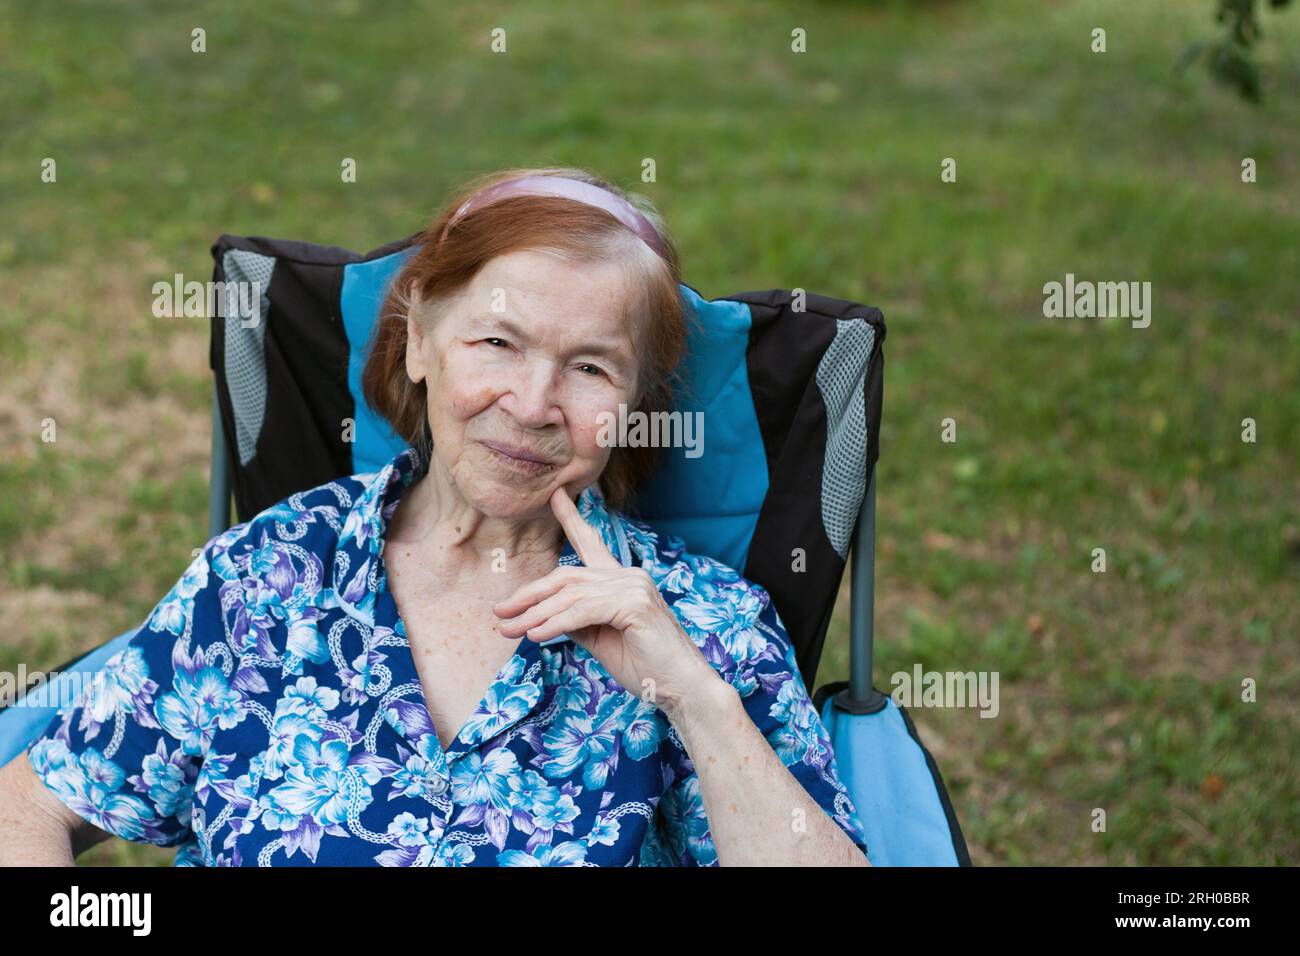 Ritratto della nonna anziana sorridente in giardino a casa. l'anziana si sta riposando seduto sulla sedia, guardando la macchina fotografica, il frutteto sullo sfondo. Somma Foto Stock